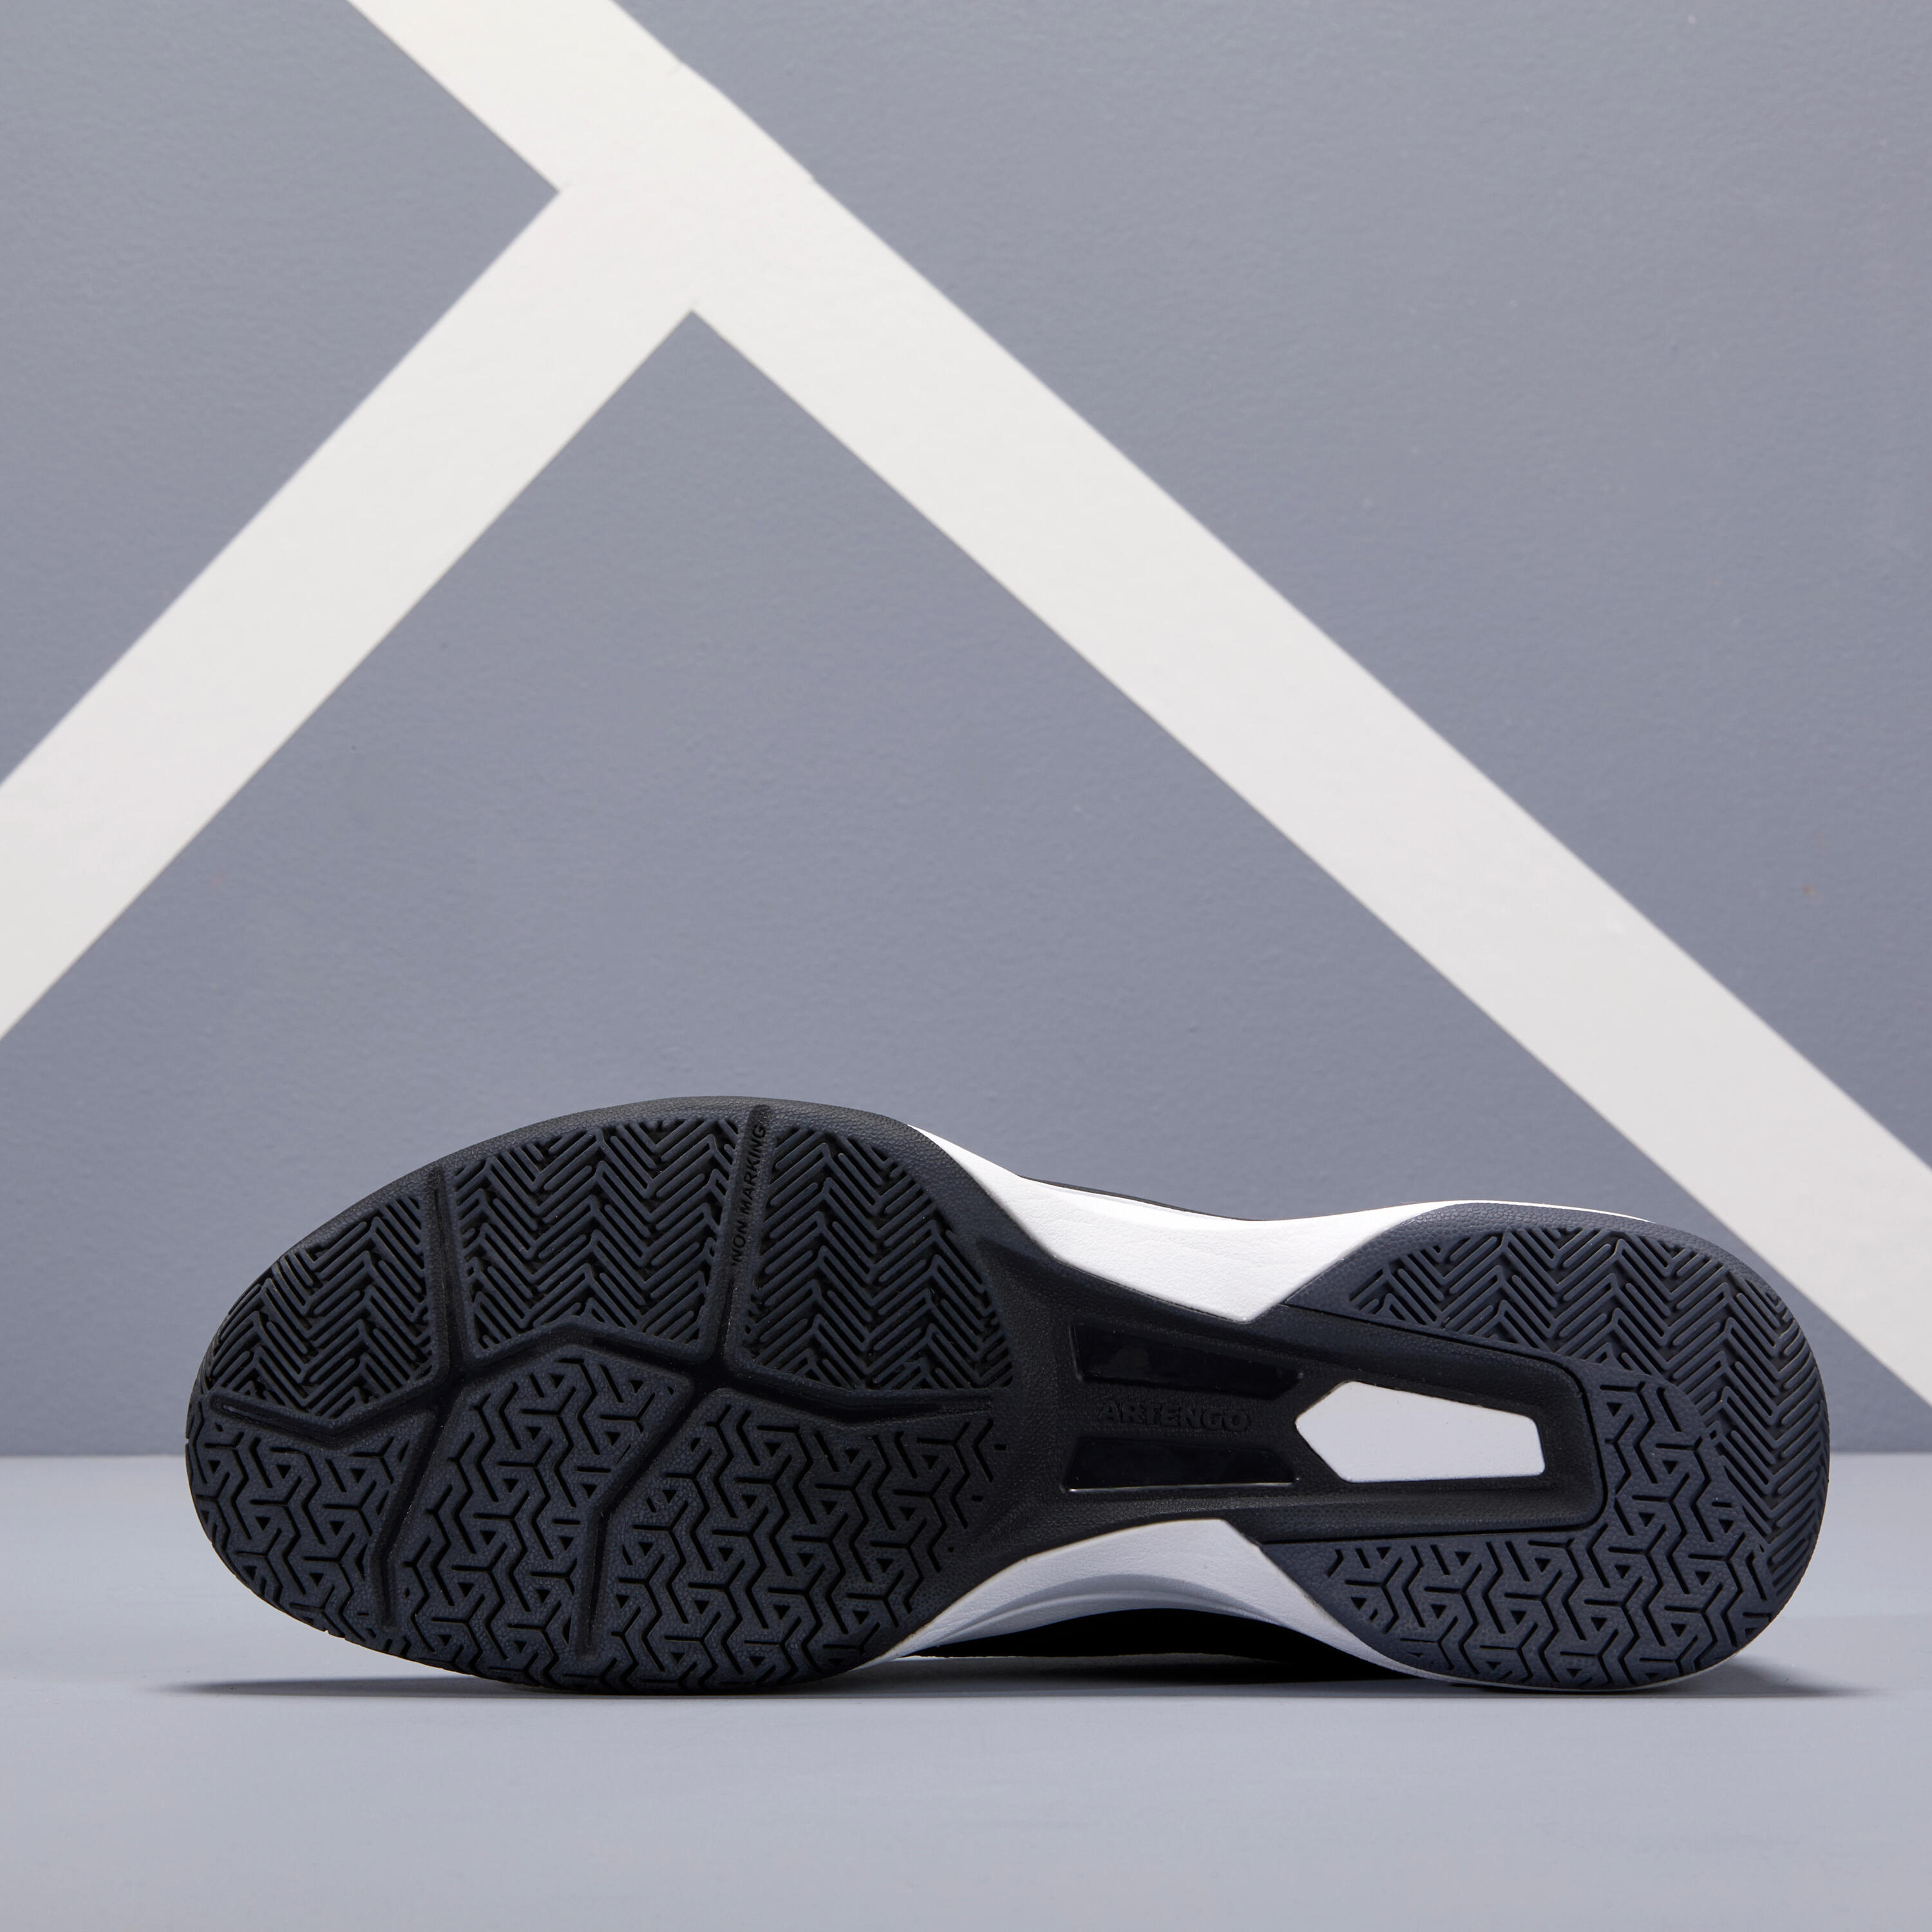 TS590 Multicourt Tennis Shoes - Black 4/9